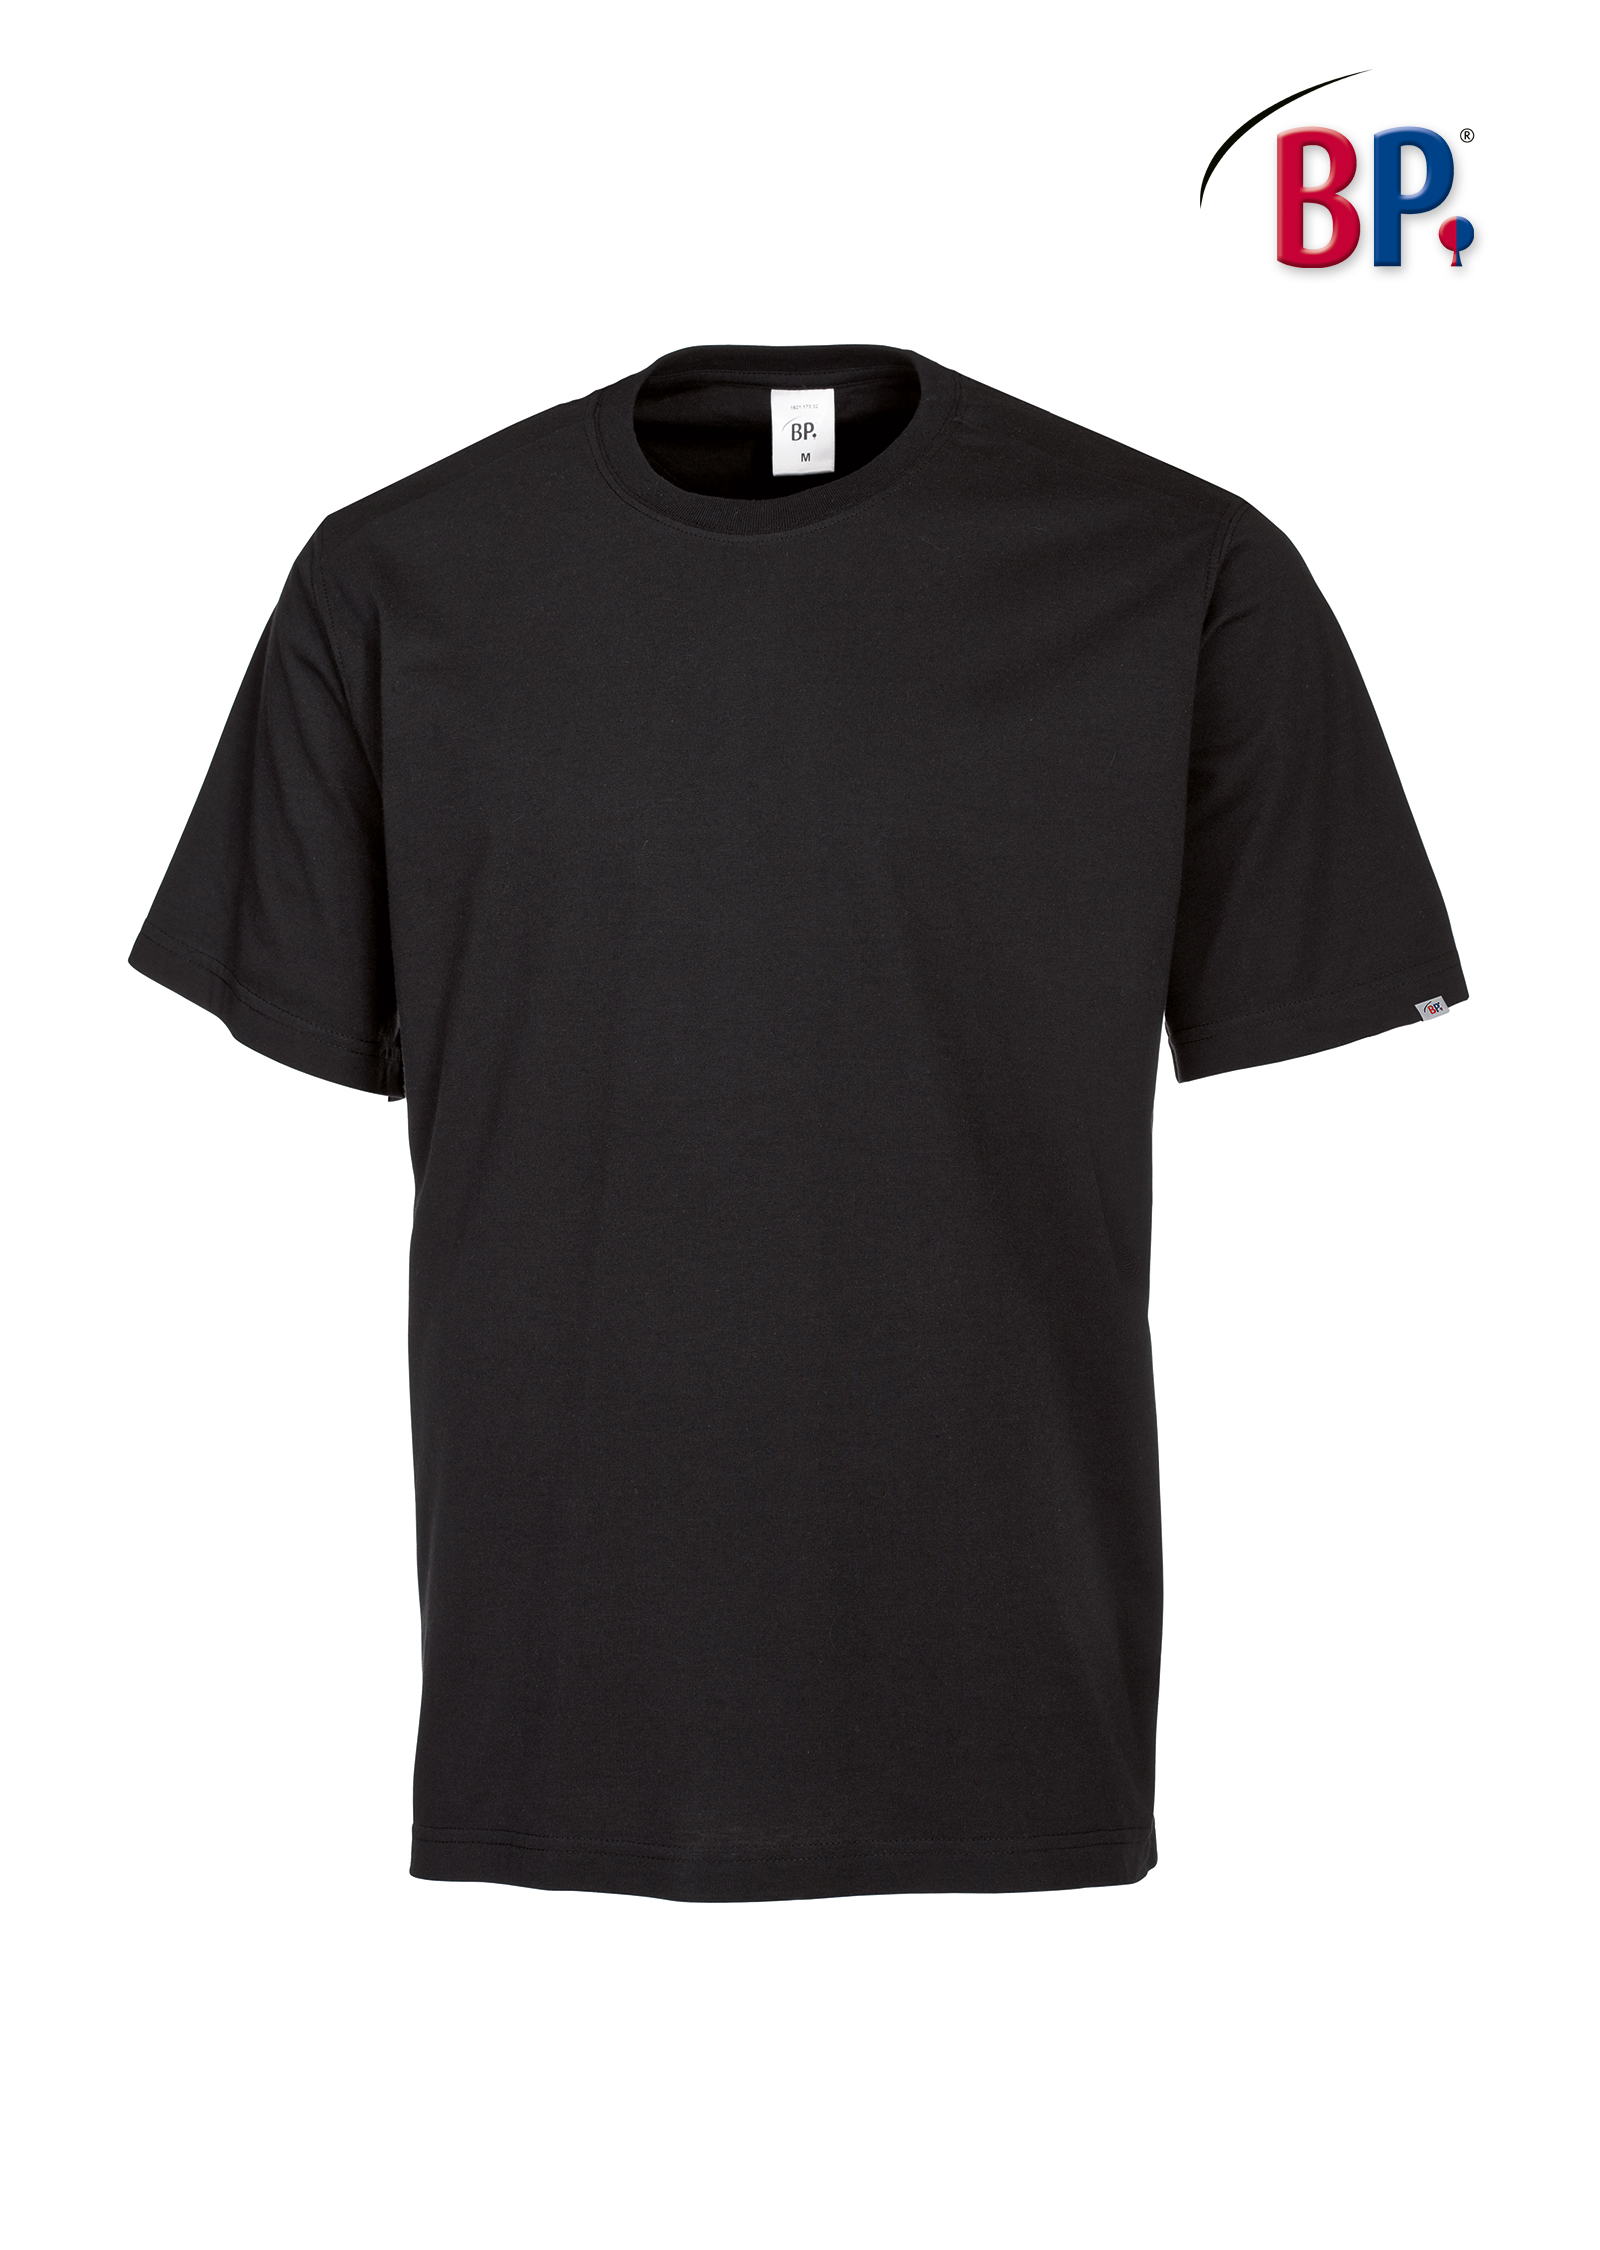 BP® T-Shirt für Sie & Ihn - 1621